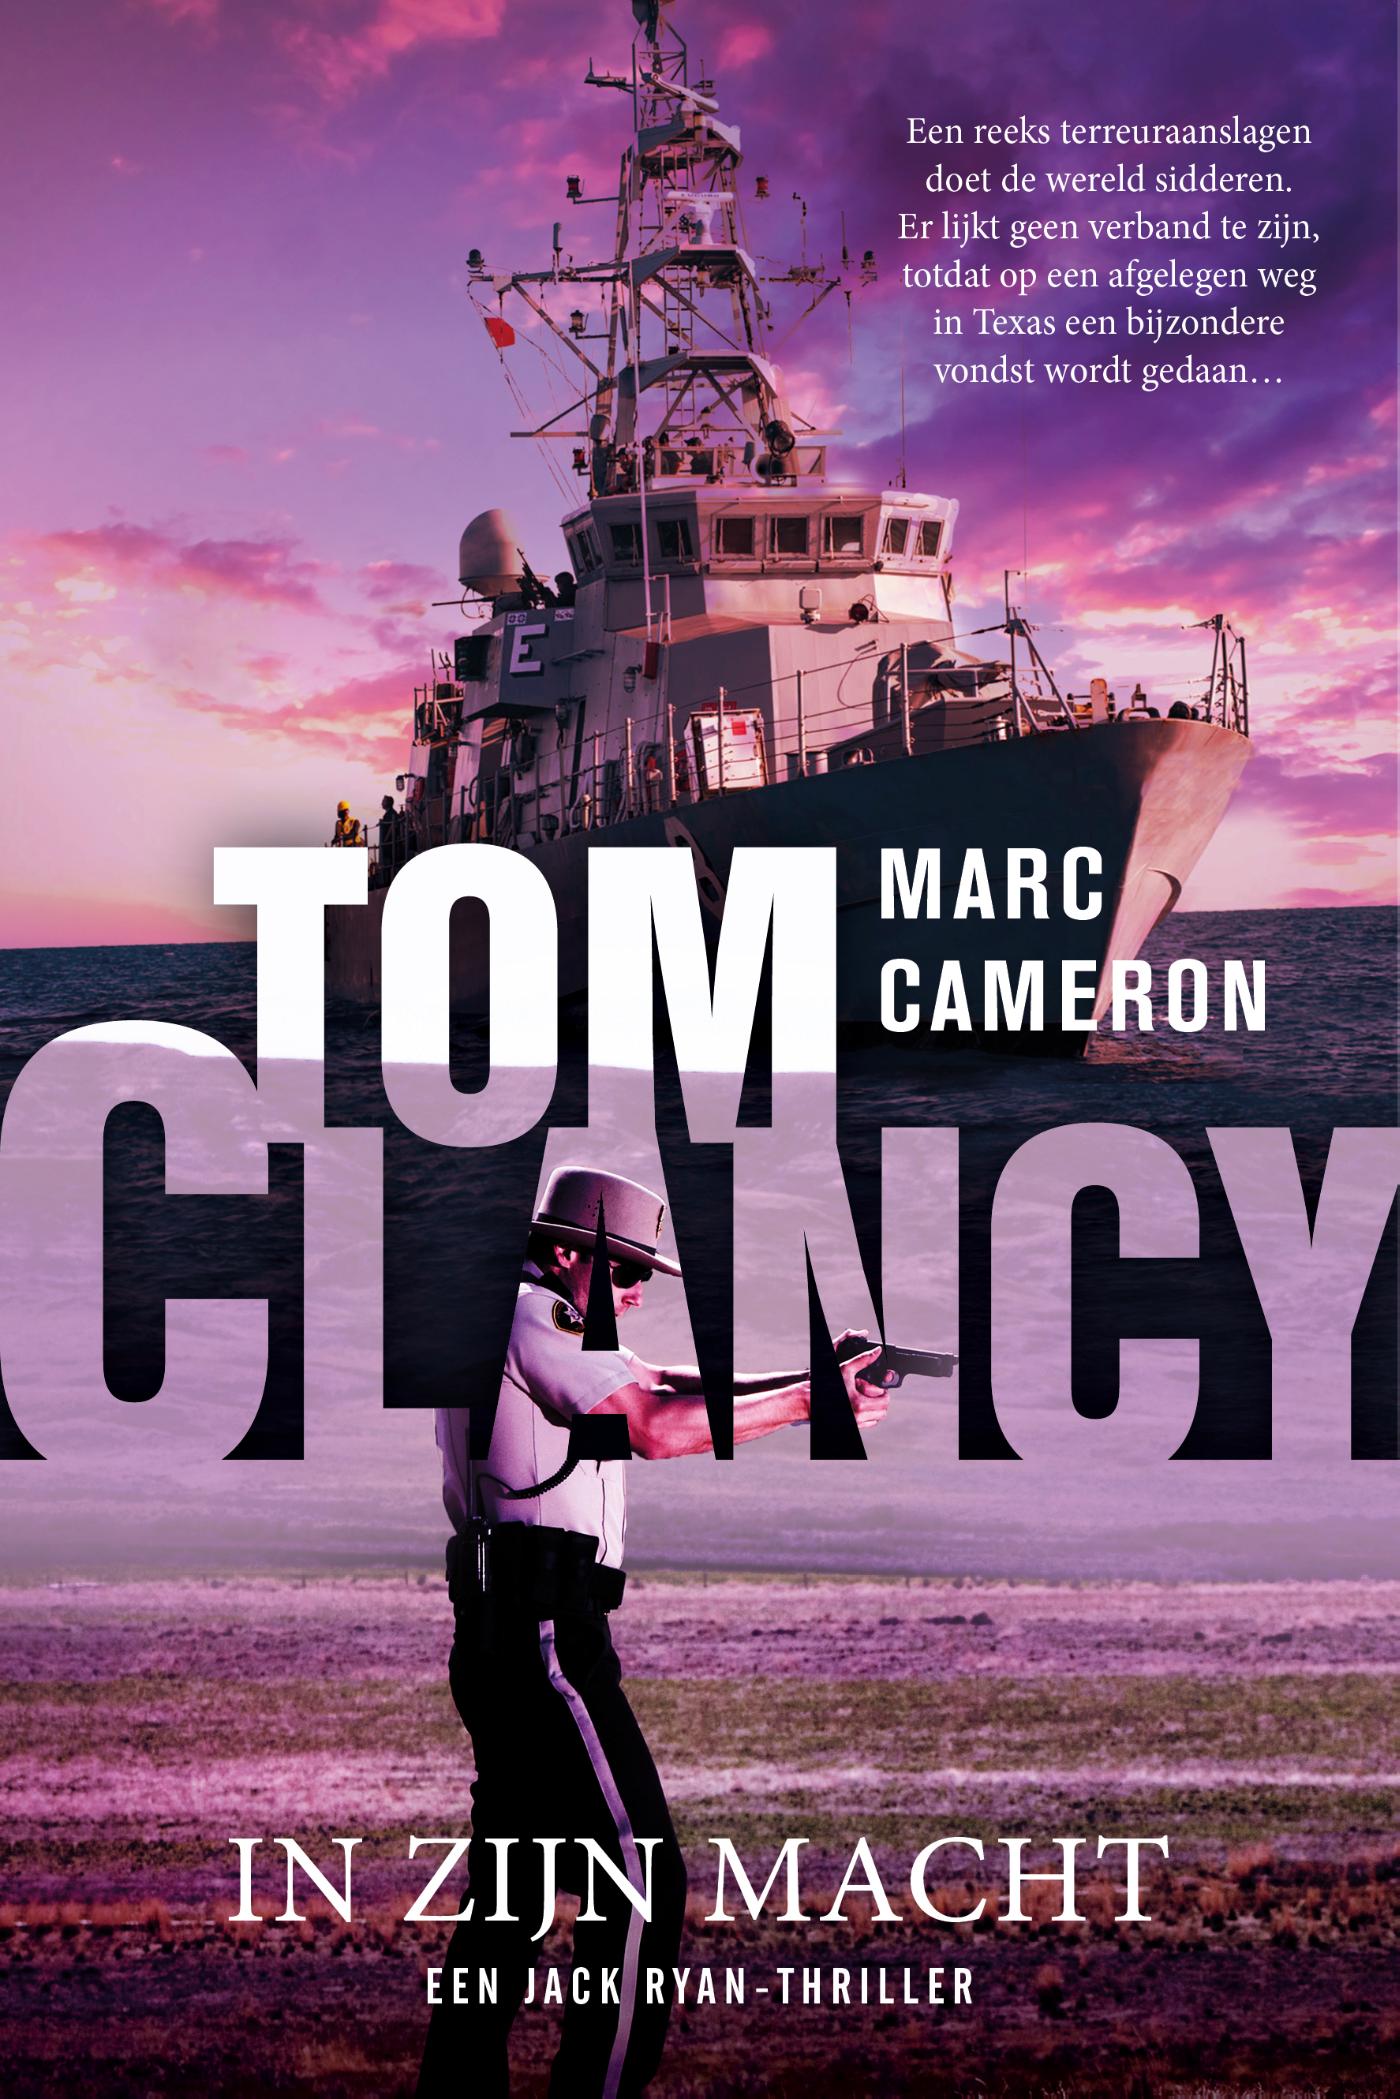 Tom Clancy In zijn macht (Ebook)